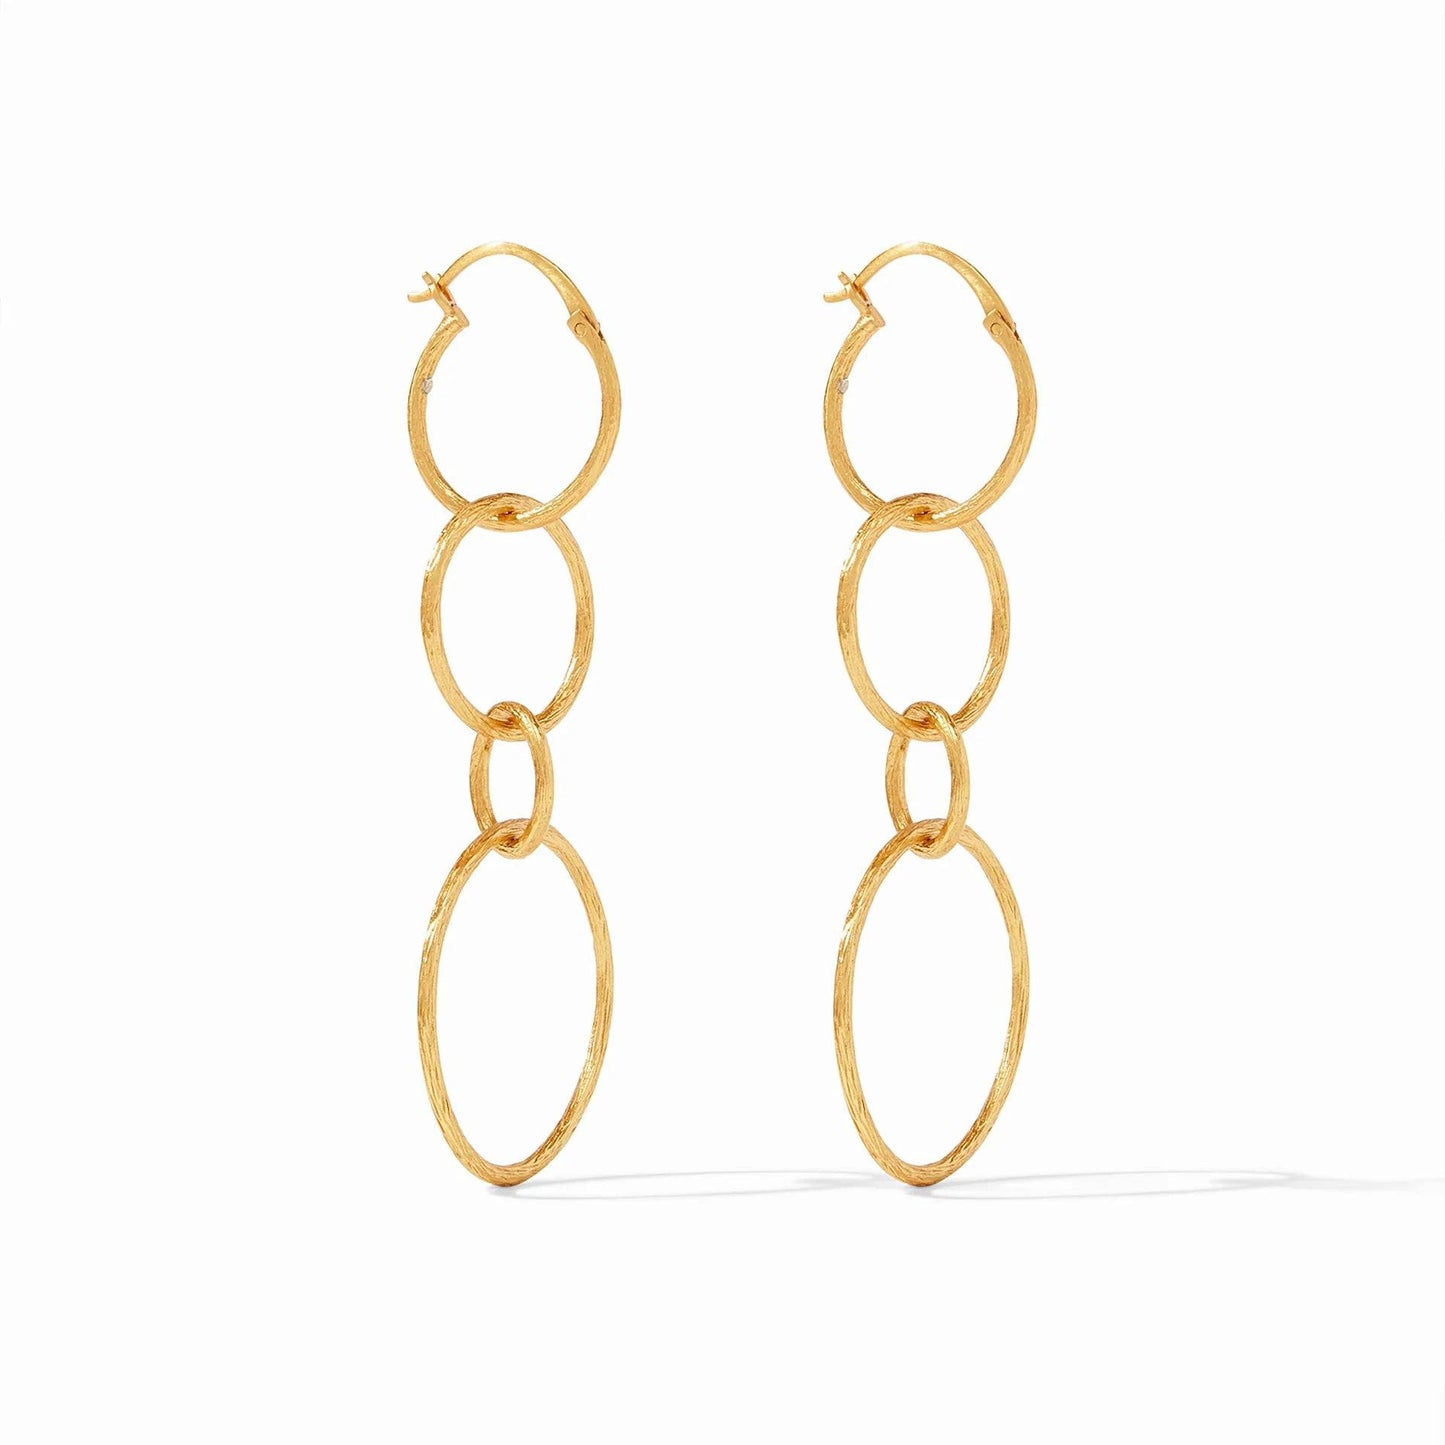 Julie Vos - Simone 3-in-1 Earring - Findlay Rowe Designs